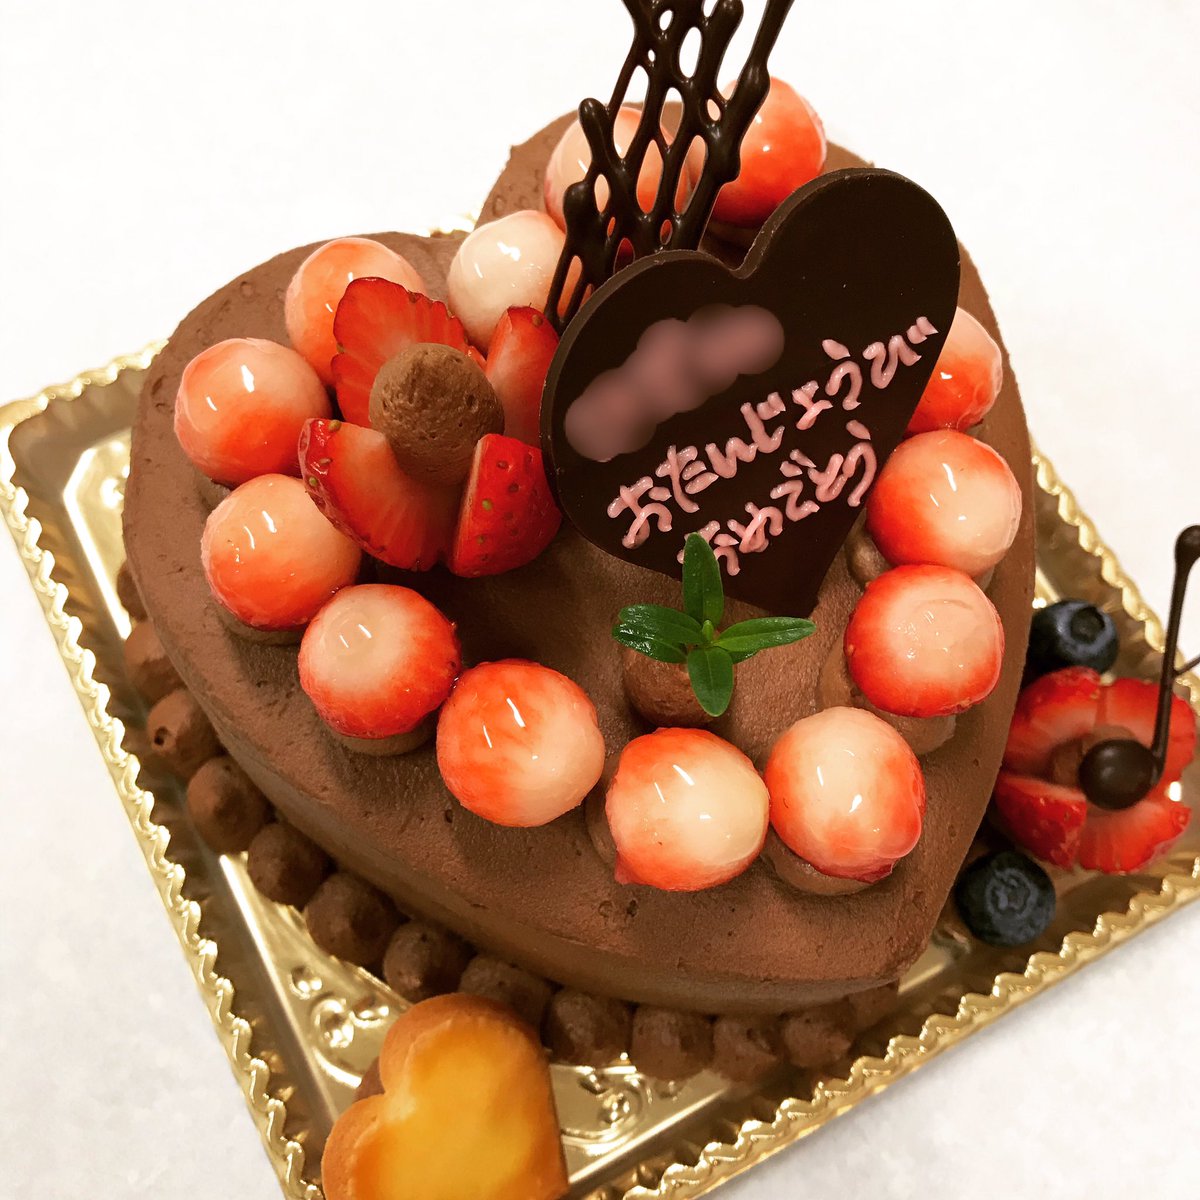 菓子工房小さなもみの木 ハートのチョコレートケーキに いちごで可愛らしく飾りました 小さなもみの木 ハート型ケーキ